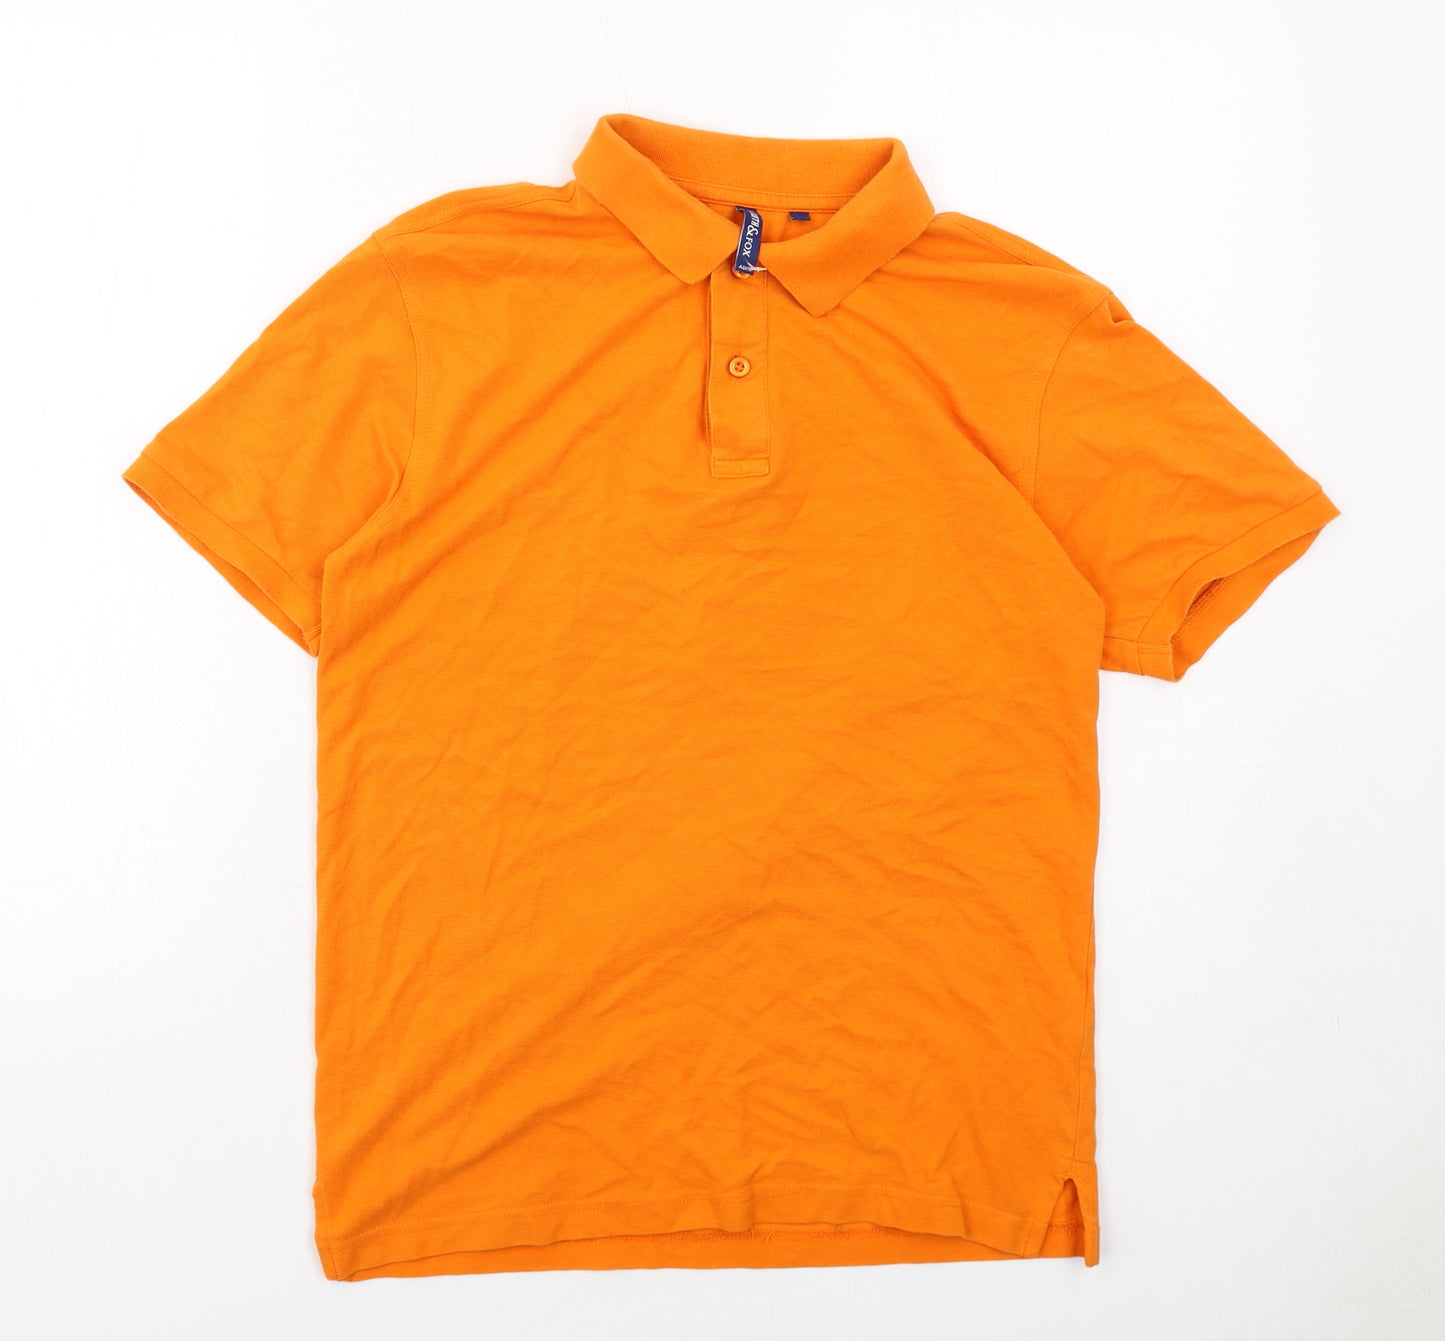 Asquith & Fox Mens Orange Cotton Polo Size S Collared Button